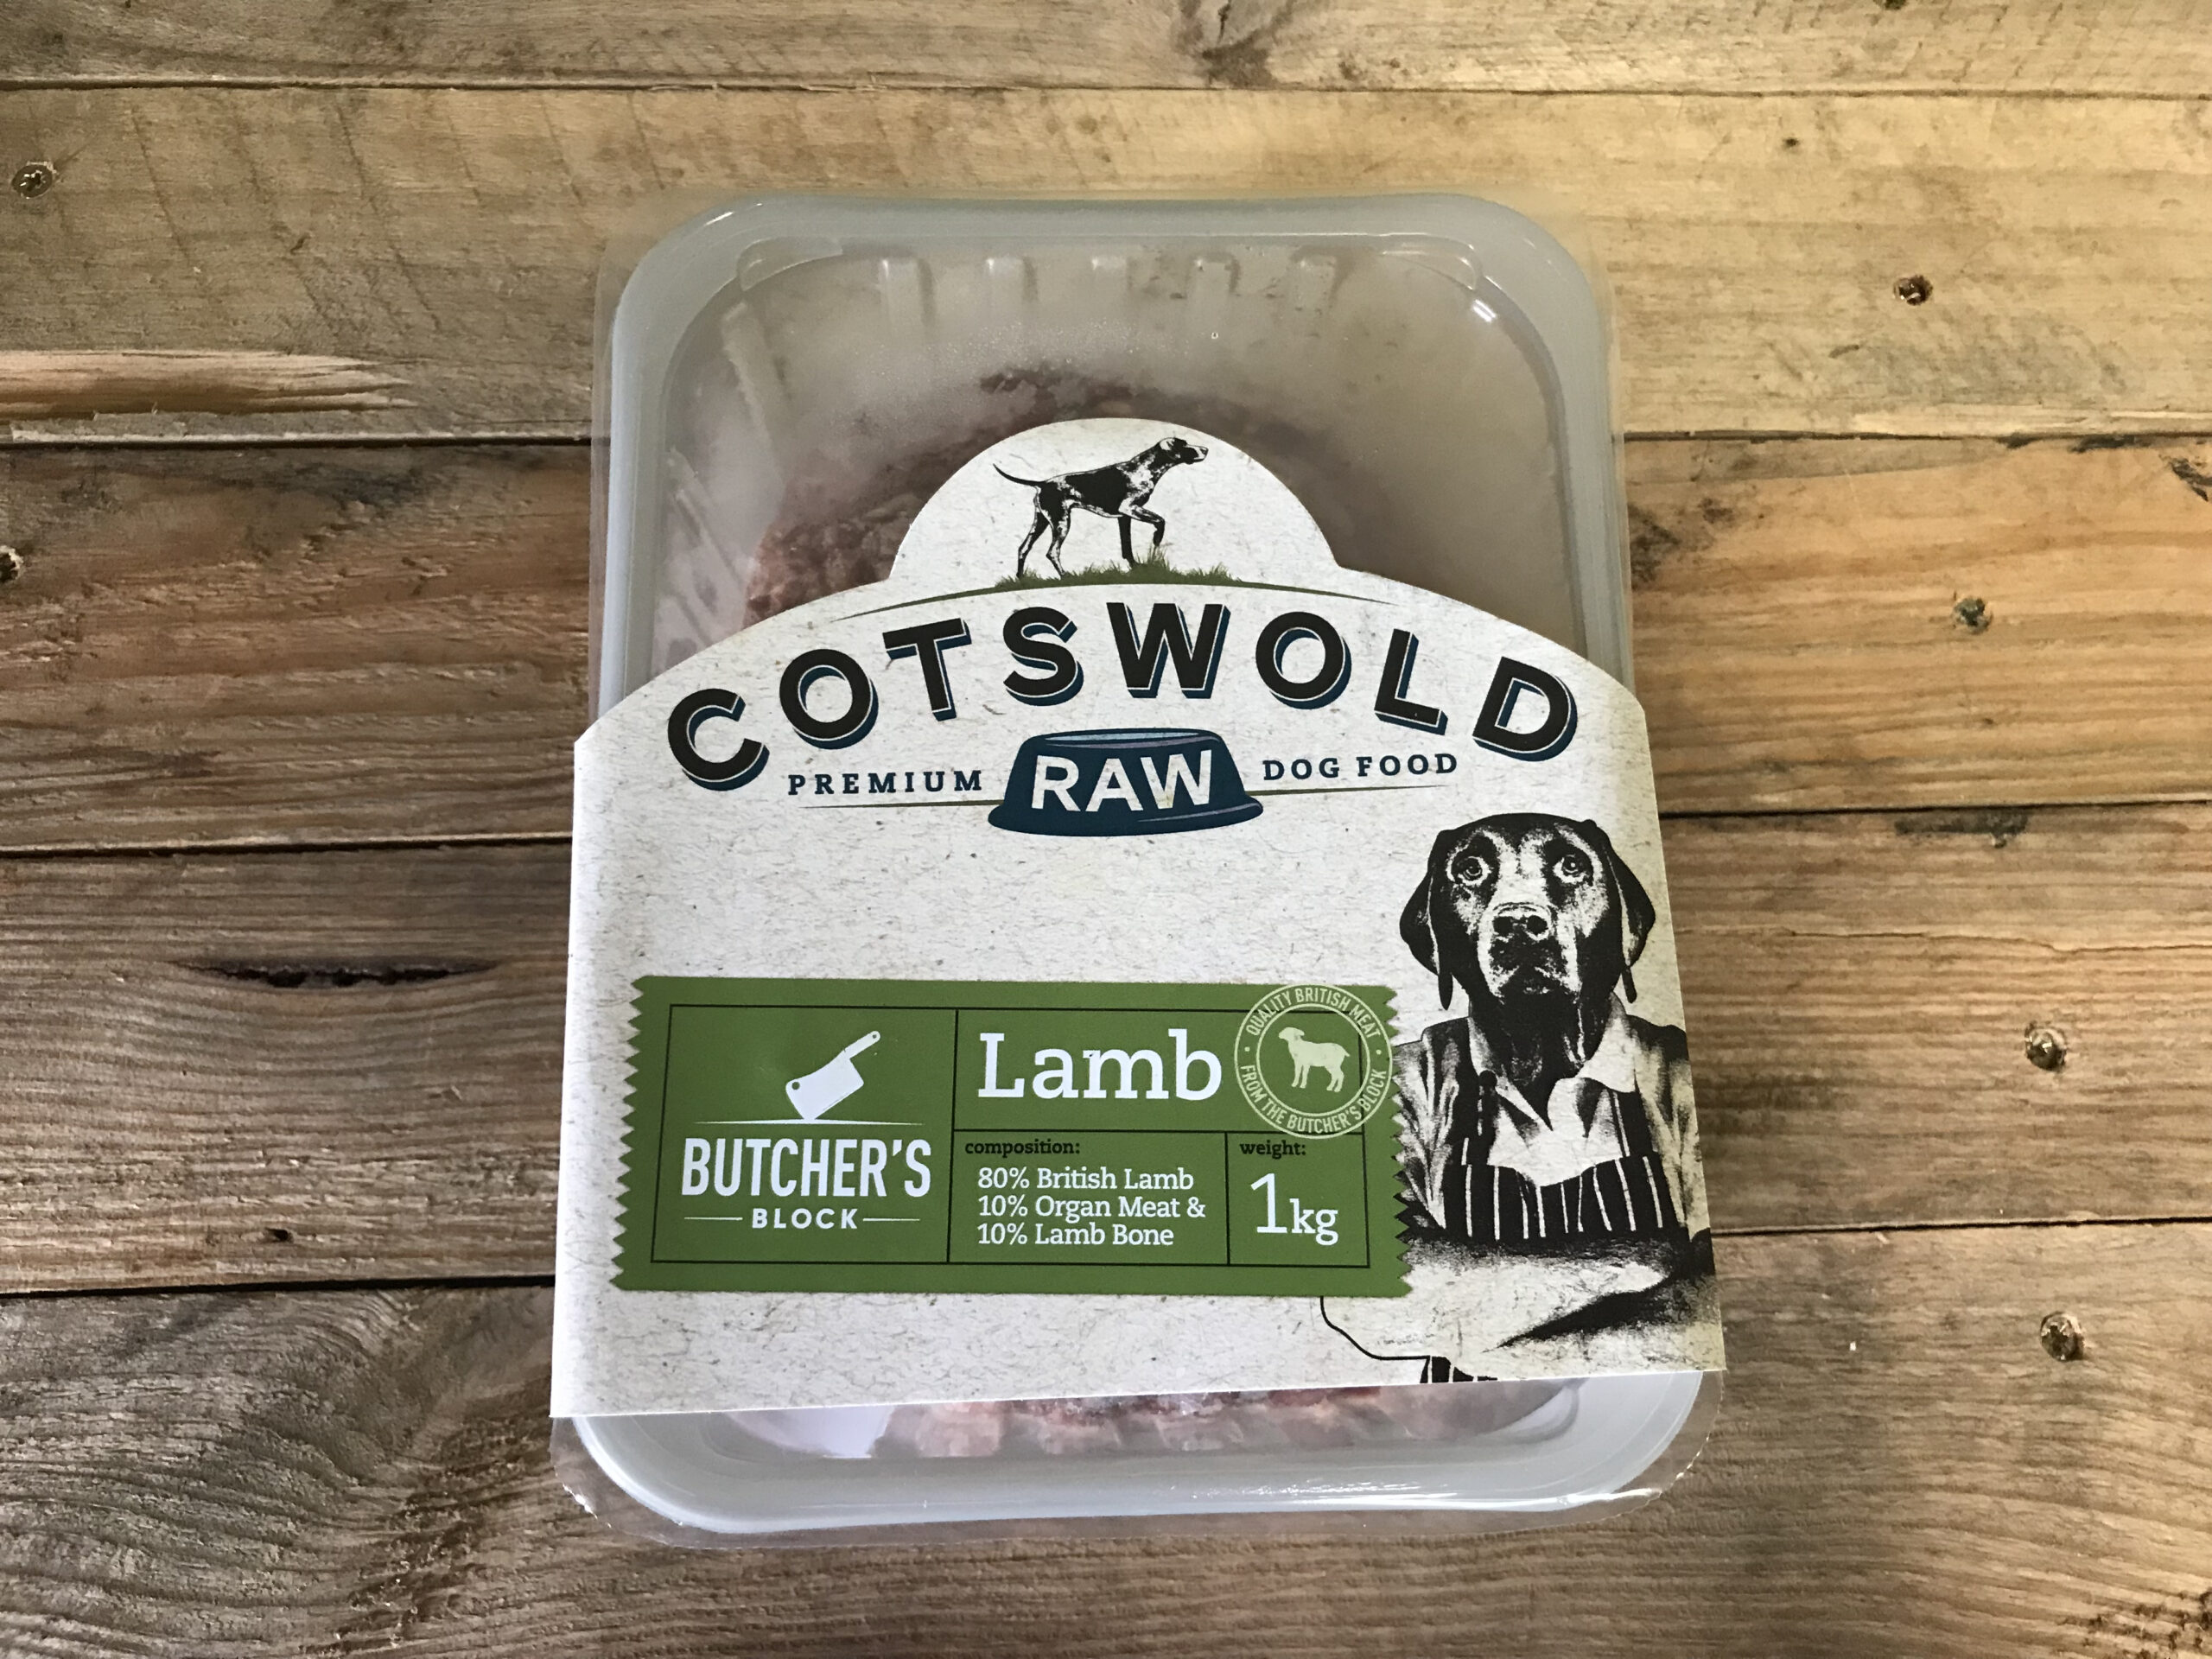 Cotswold Butchers Block Lamb – 1kg